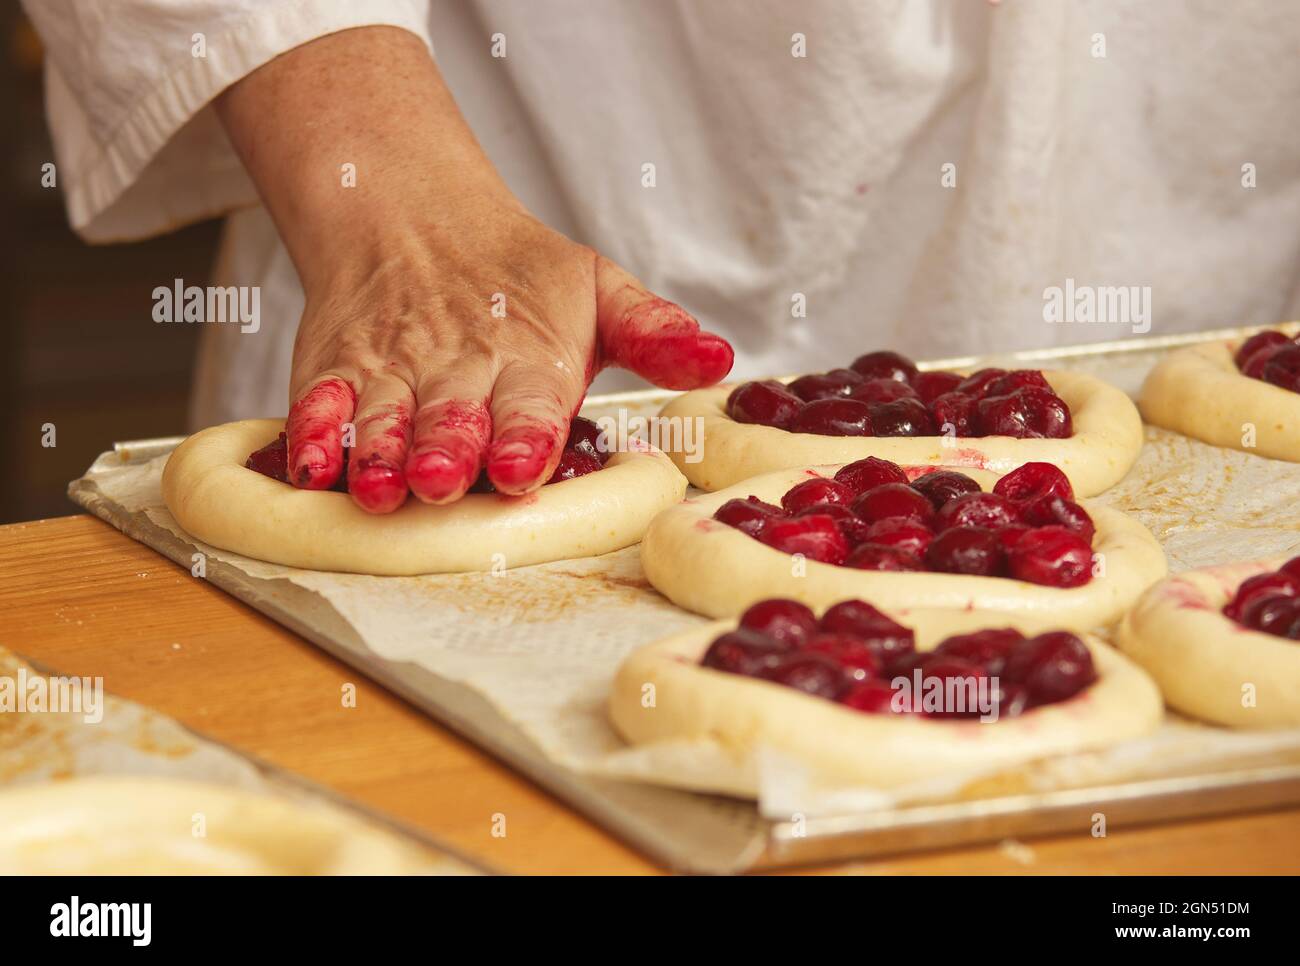 La donna nella foto sta facendo torte di frutta riempite. Mani che riempiono la pasta di lievito con fragole. Lavoro nel panificio. Foto Stock